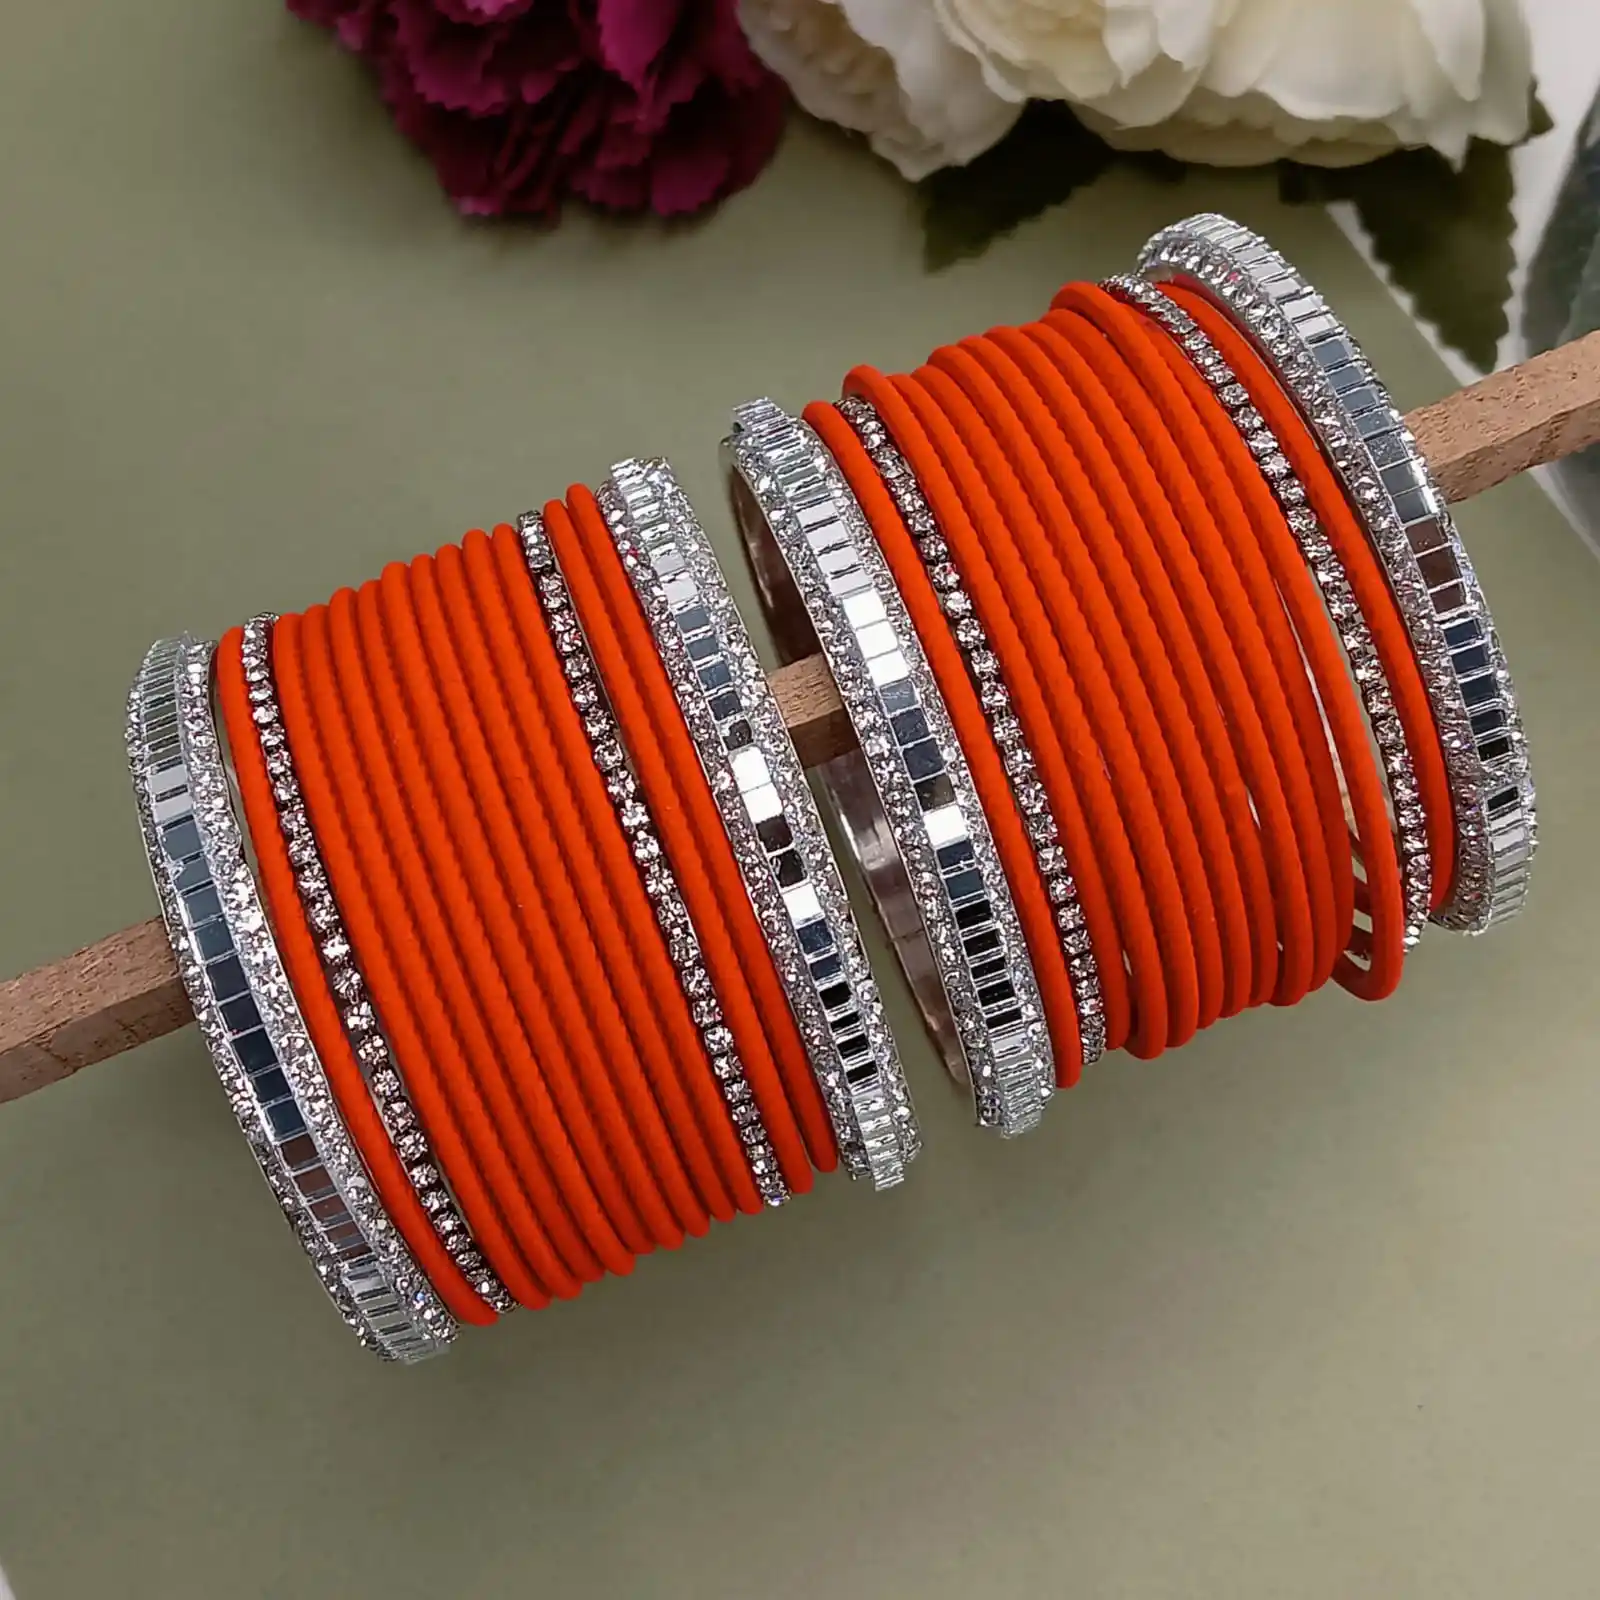 Индийский оптовый продавец, традиционный набор свадебных браслетов, матовые металлические браслеты с искусственным зеркалом и кристаллами для женщин